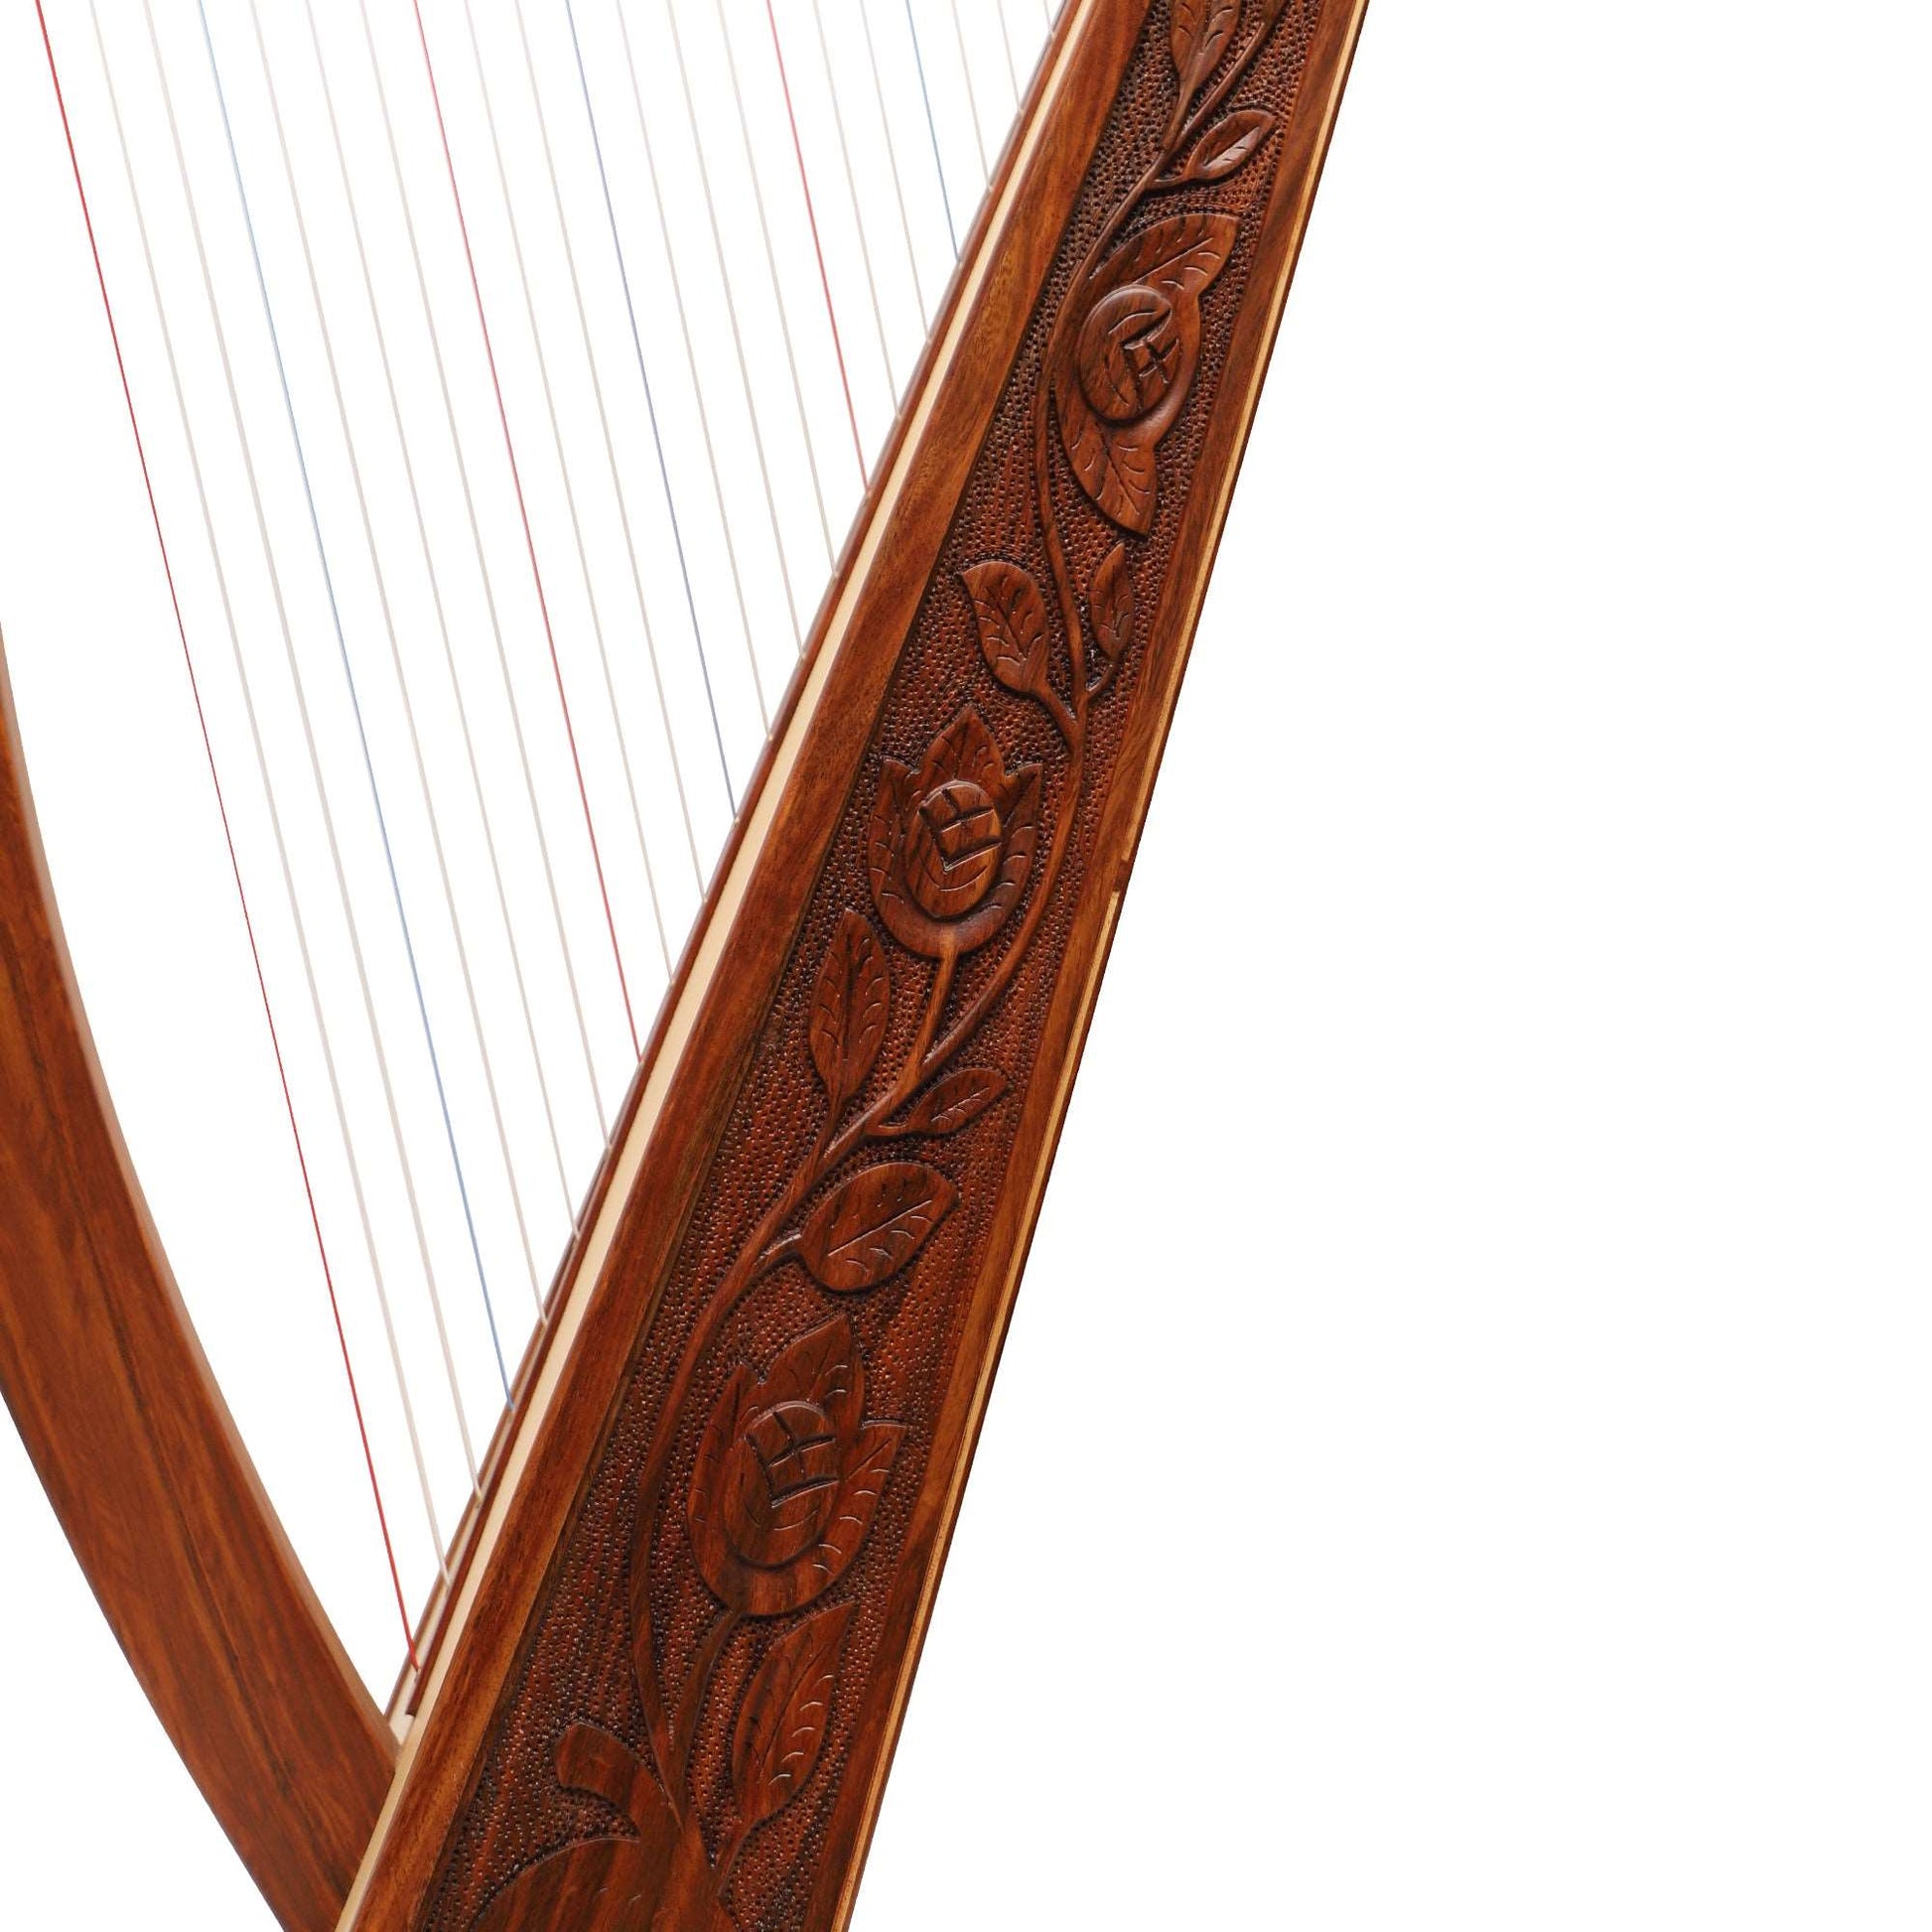 29 Strings Trinity Harp Rosewood Muzikkon